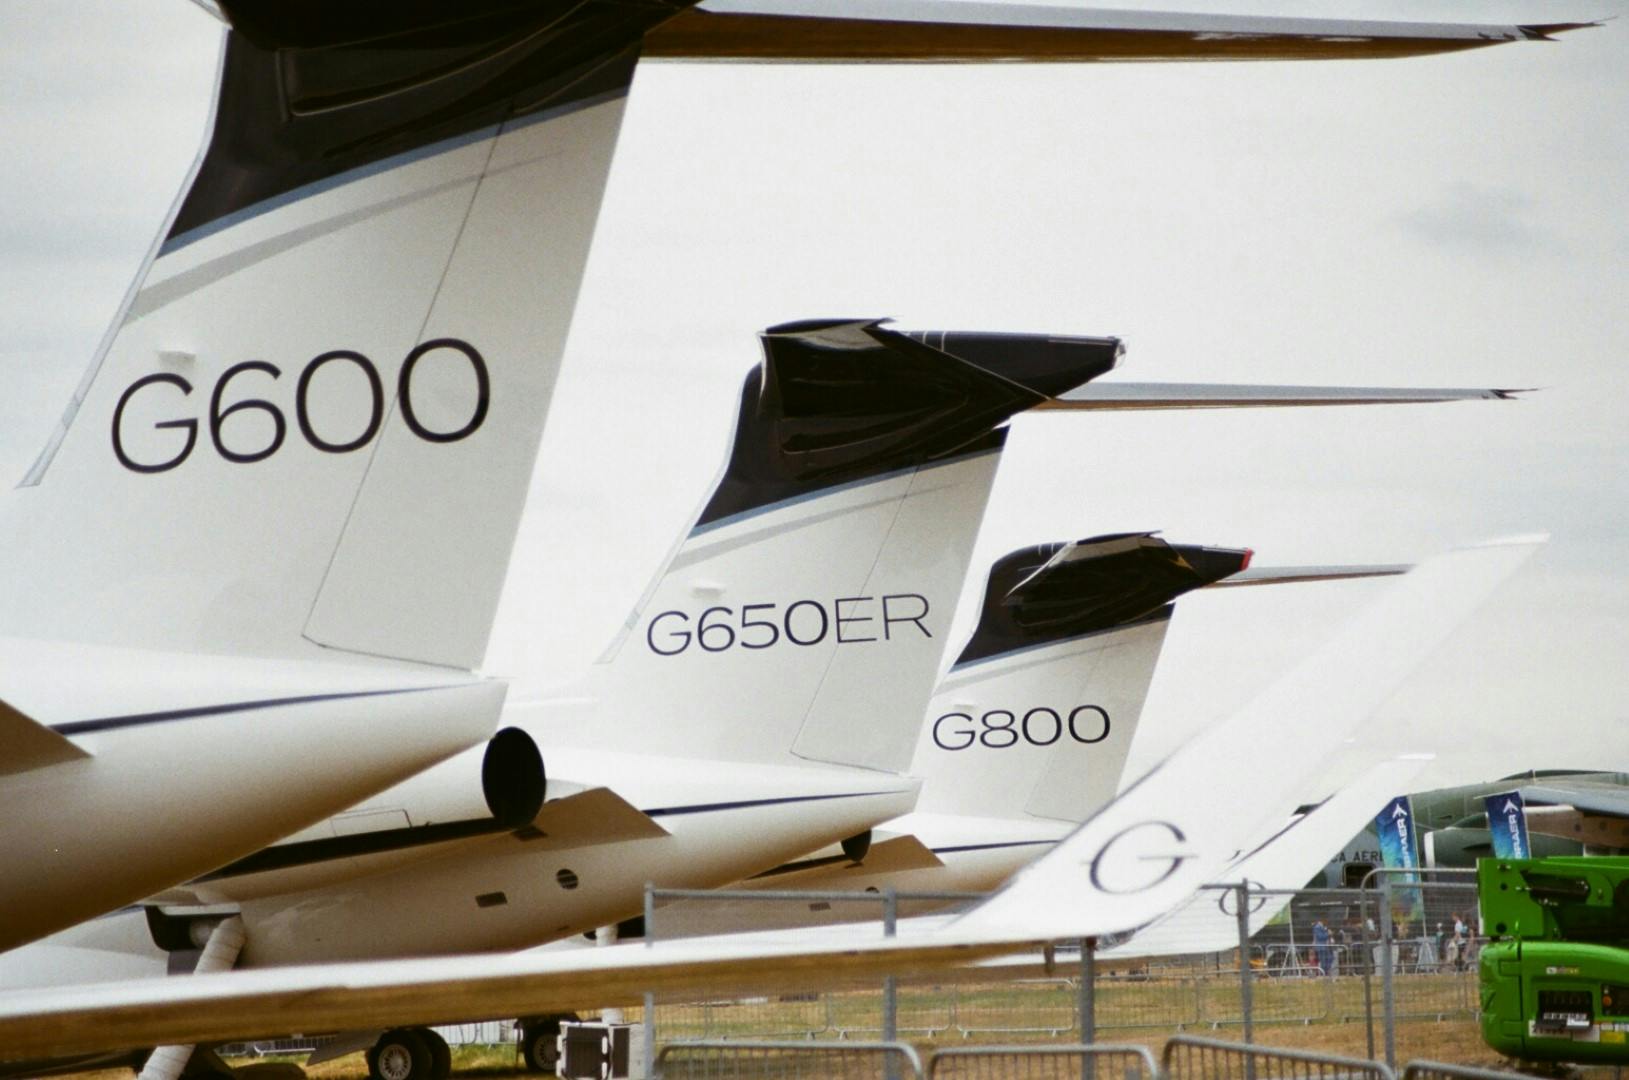 Farnborough Airshow 2022 - Gulfsteam Jets